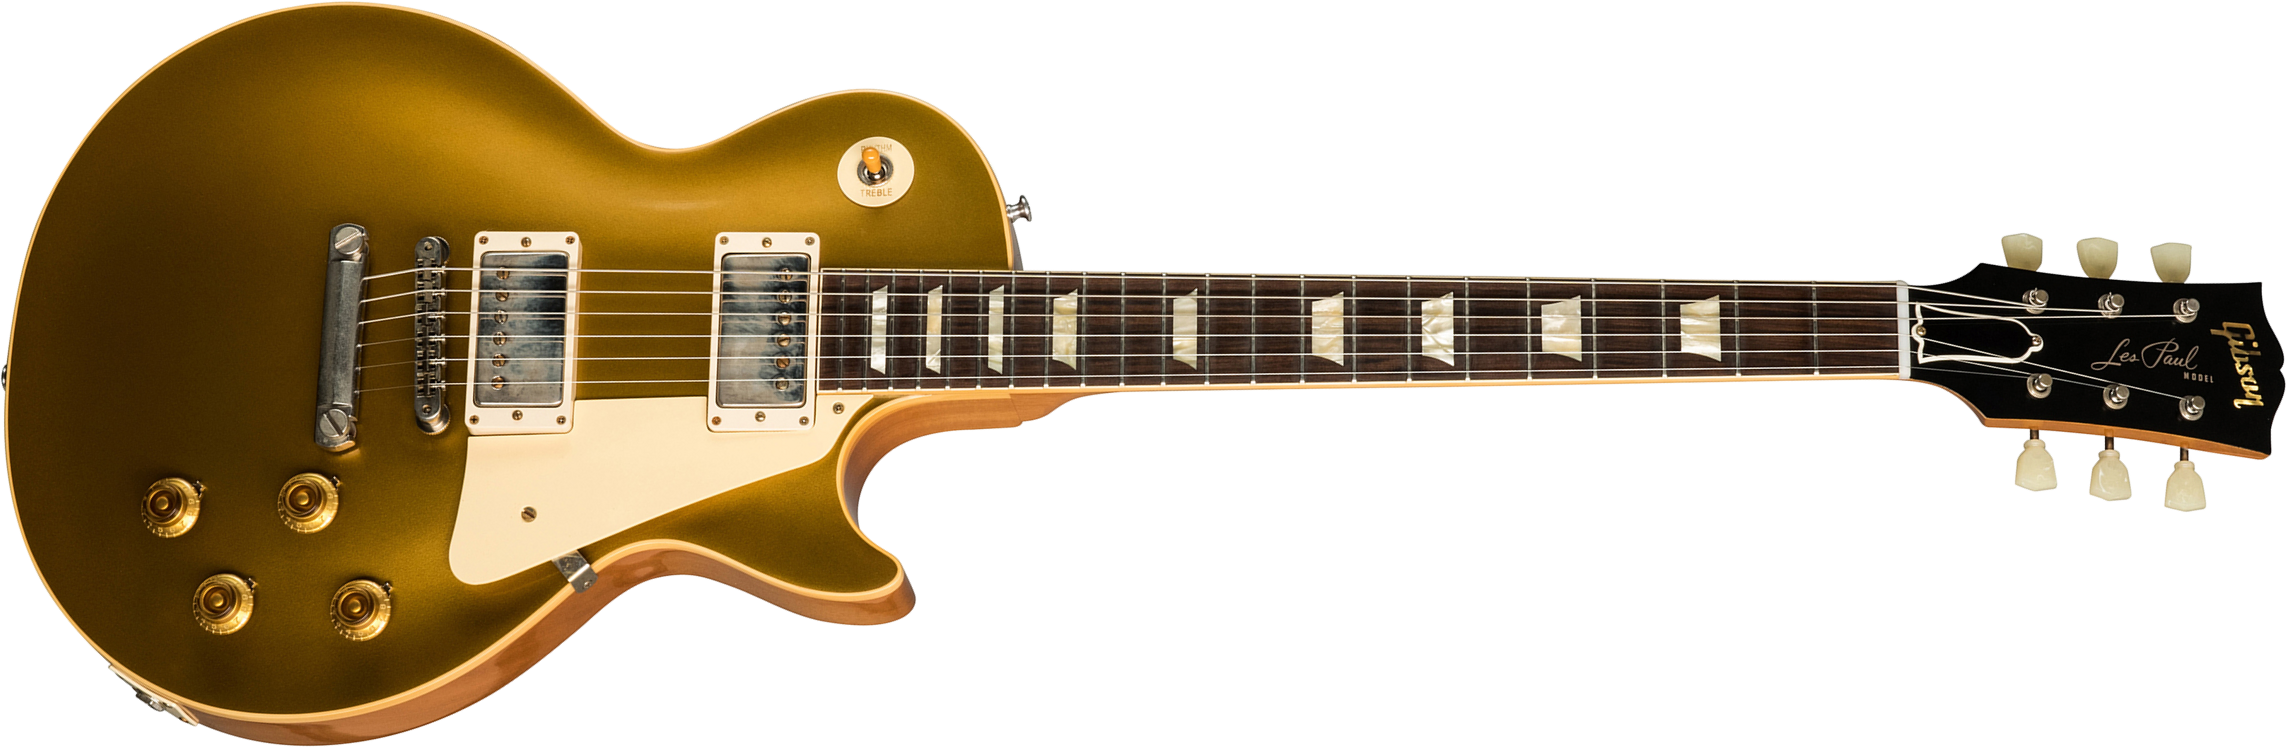 Gibson Custom Shop Les Paul Goldtop 1957 Reissue 2019 2h Ht Rw - Vos Double Gold - Guitarra eléctrica de corte único. - Main picture